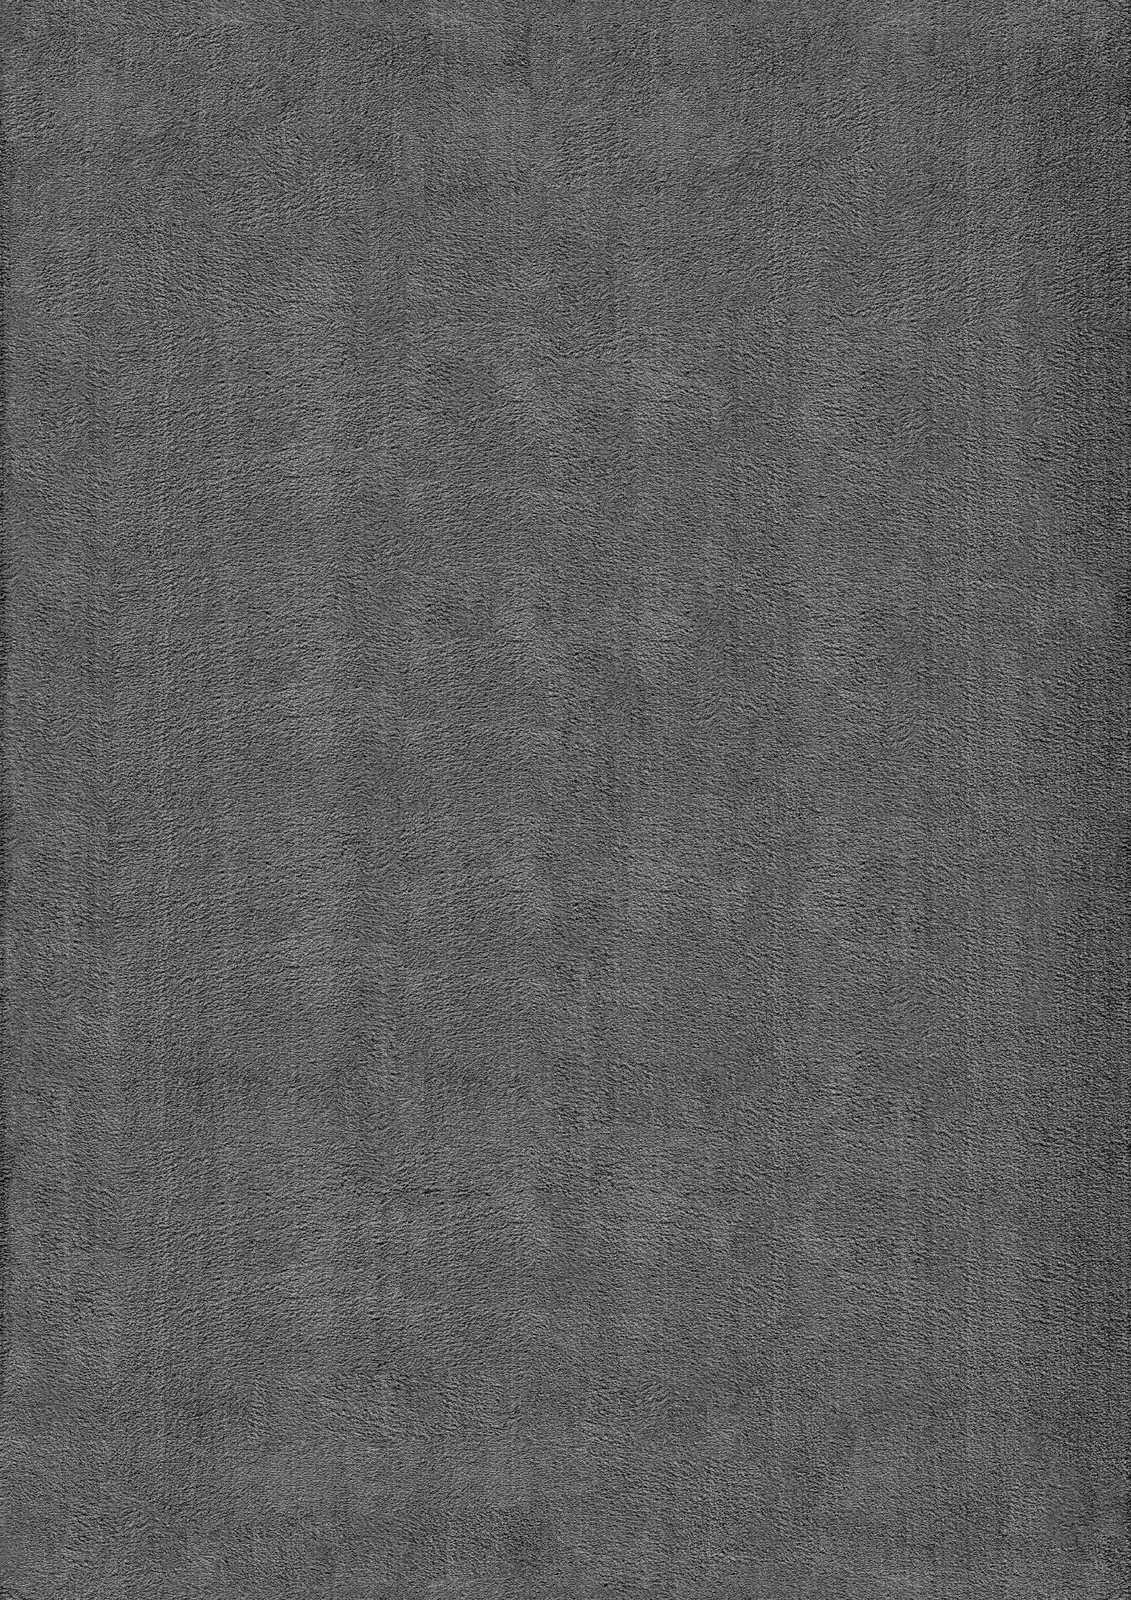             Tapis moelleux à poils longs anthracite - 110 x 60 cm
        